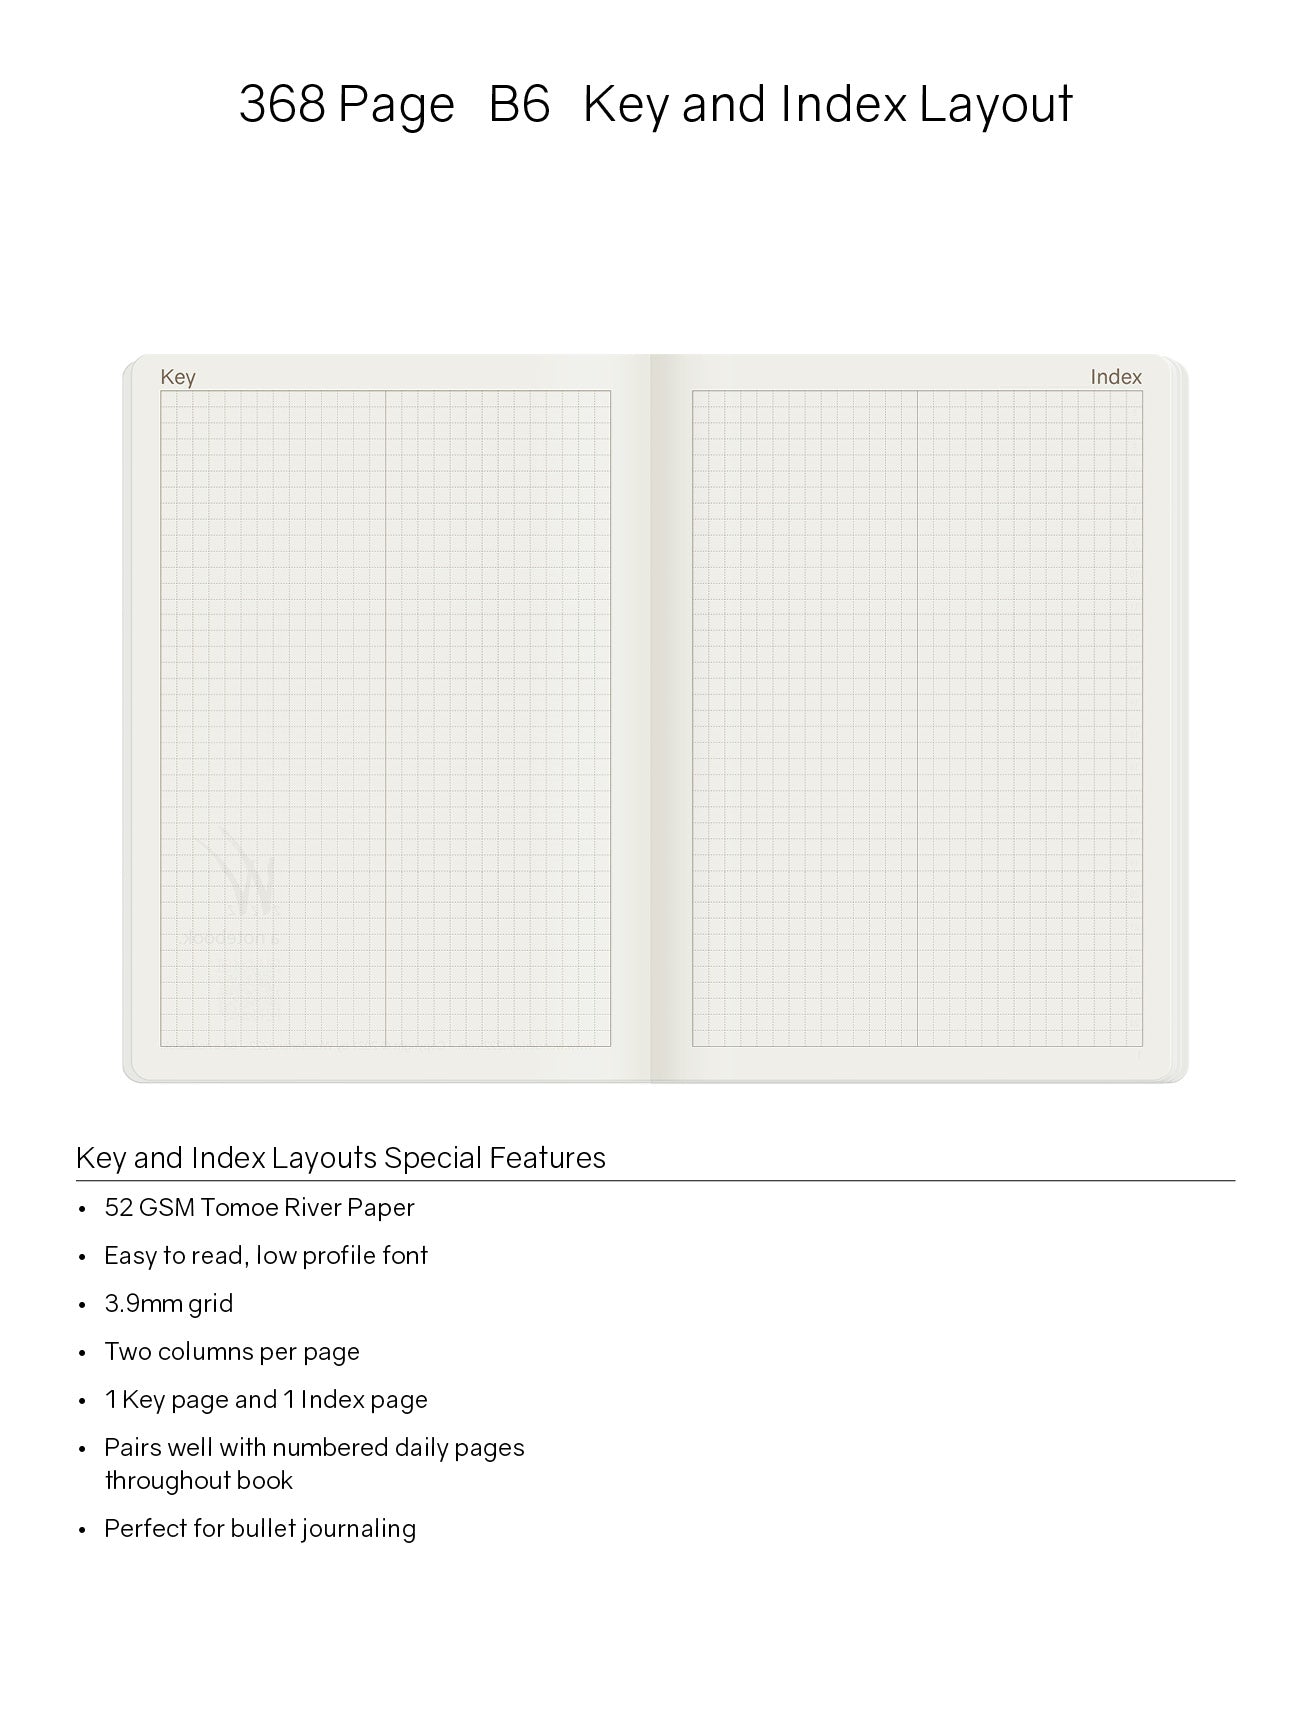 WONDERLAND 222 - B6 Notebook (368 page)